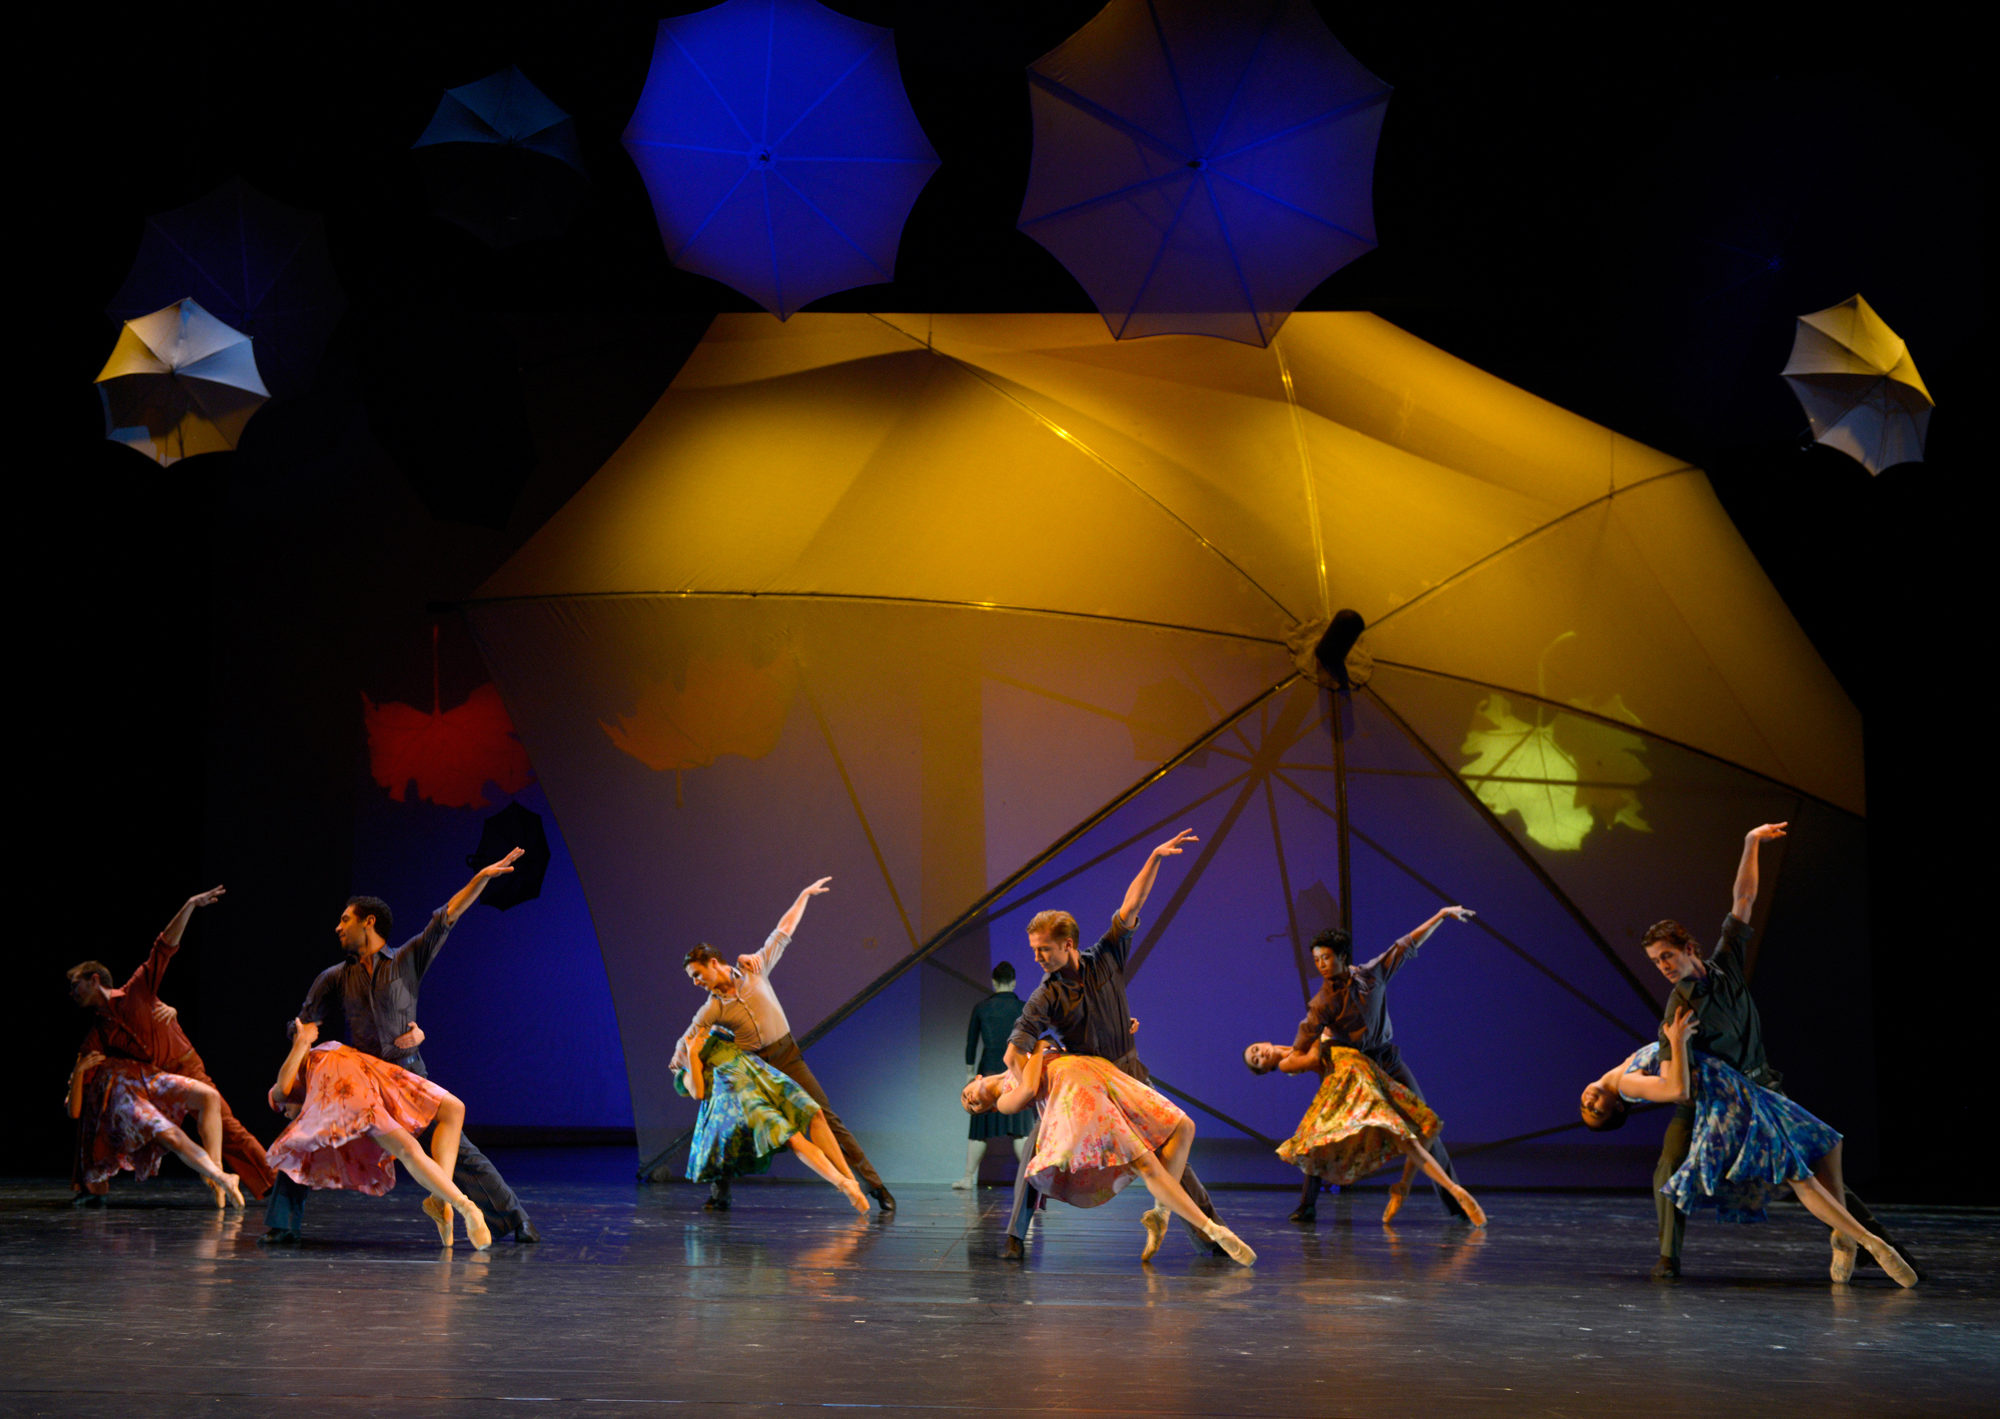 Ensemble in "La vie en rose", Ballett von Ben Van Cauwenbergh (Aalto Ballett Essen) Foto ©Bettina Stöß